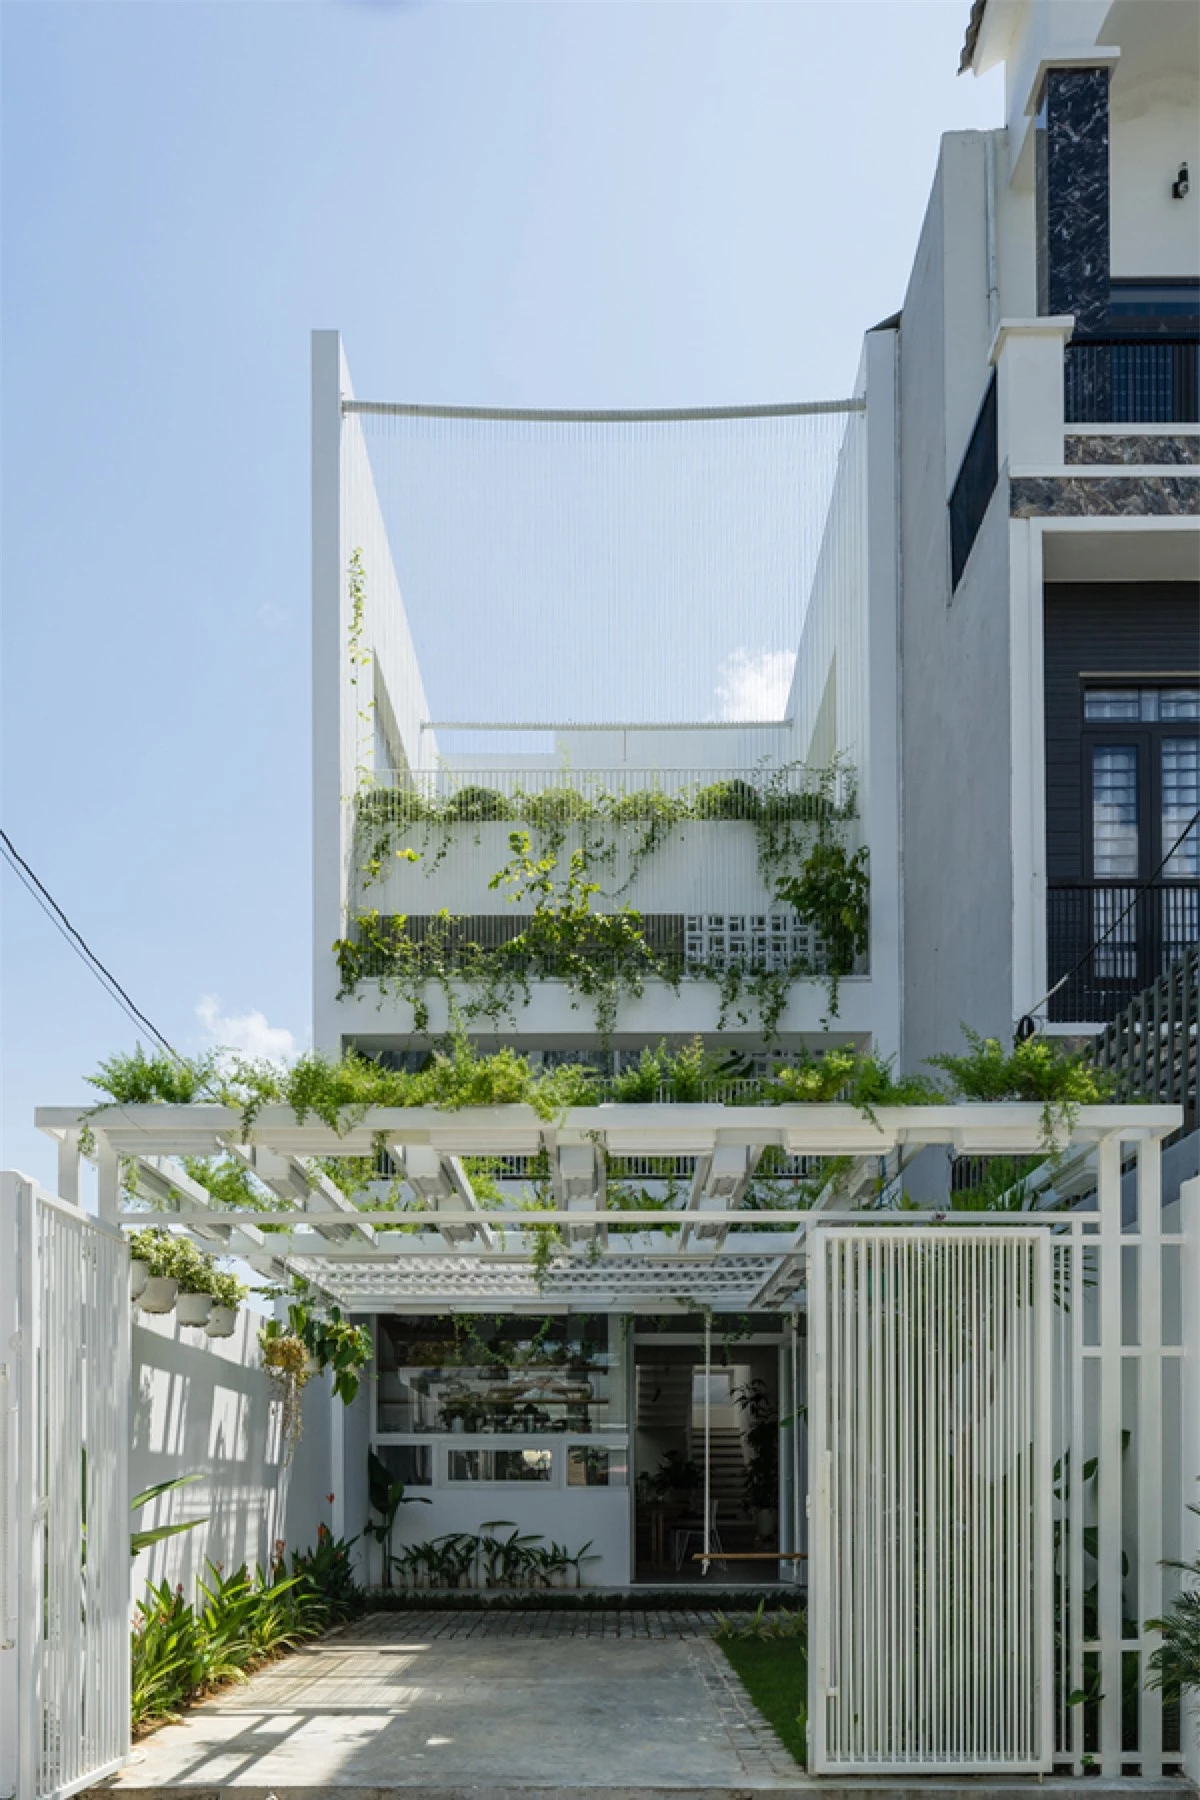 Ngôi nhà nằm ở quận Cẩm Lệ, TP Đà Nẵng, được xây dựng trên khu đất 100m2. Công trình có quy mô 3 tầng được thiết kế với ý tưởng đem thiên nhiên vào từng góc nhà, tạo nên một không gian sống tiện nghi với bầu không khí trong lành. Bên ngoài công trình có dáng vẻ trang nhã, giản dị với màu trắng chủ đạo kết hợp với màu xanh của cây cối.